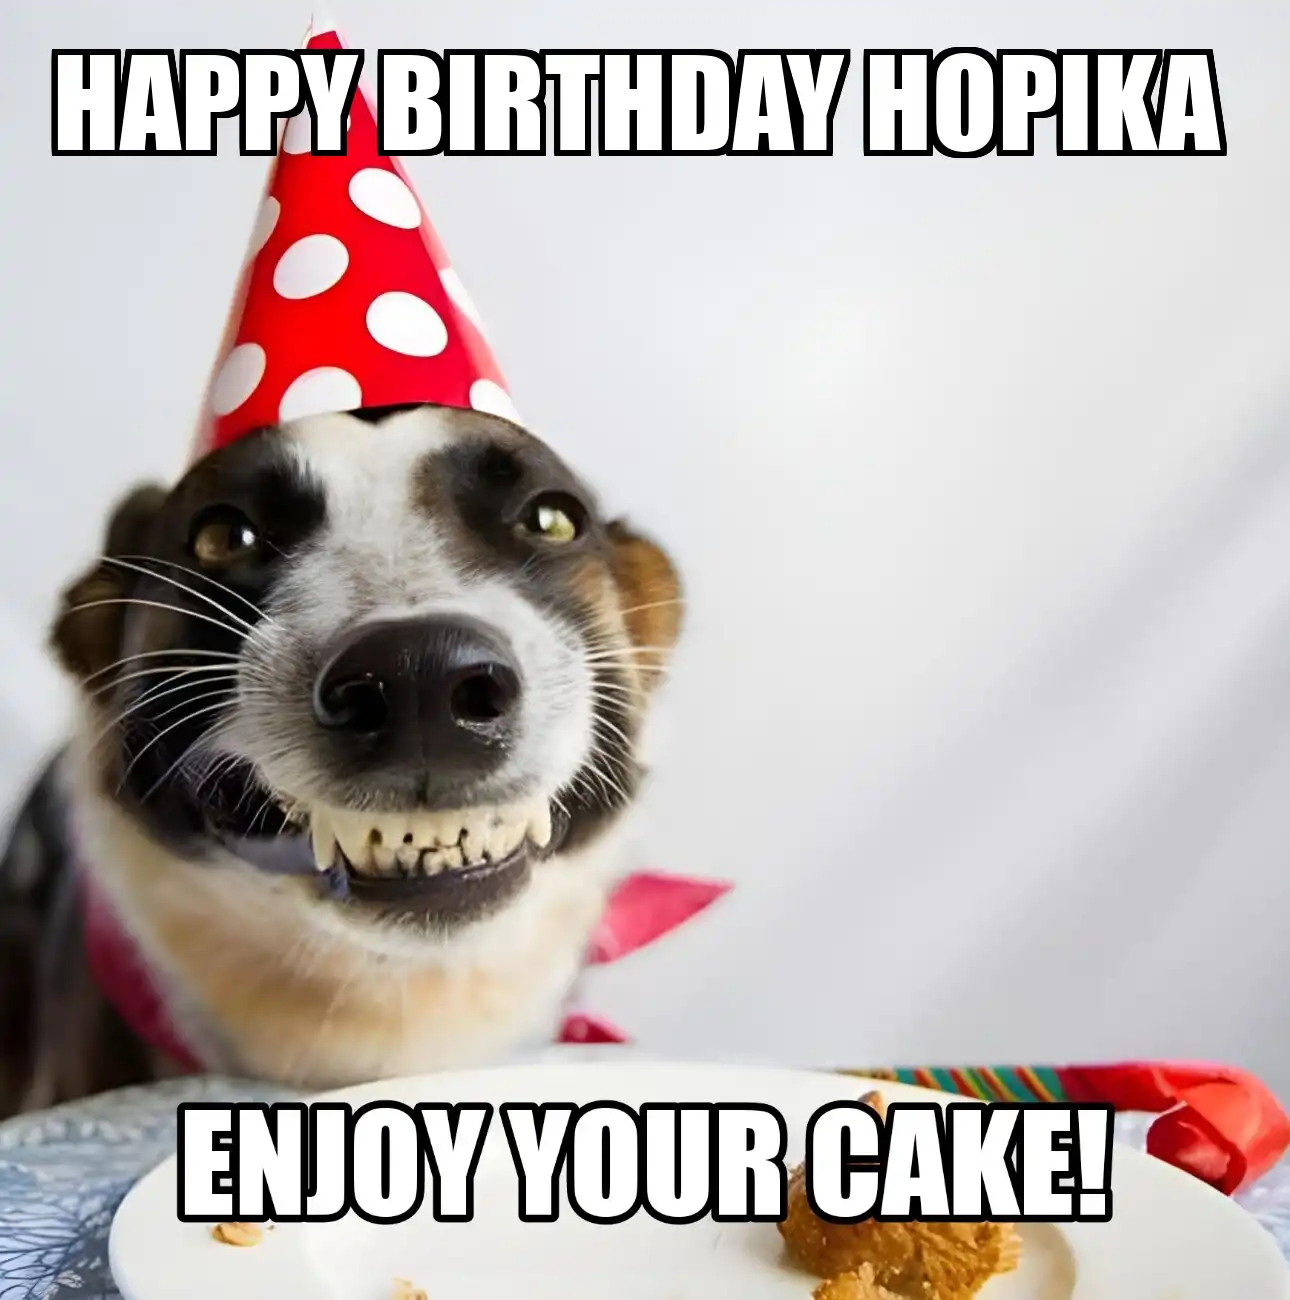 Happy Birthday Hopika Enjoy Your Cake Dog Meme